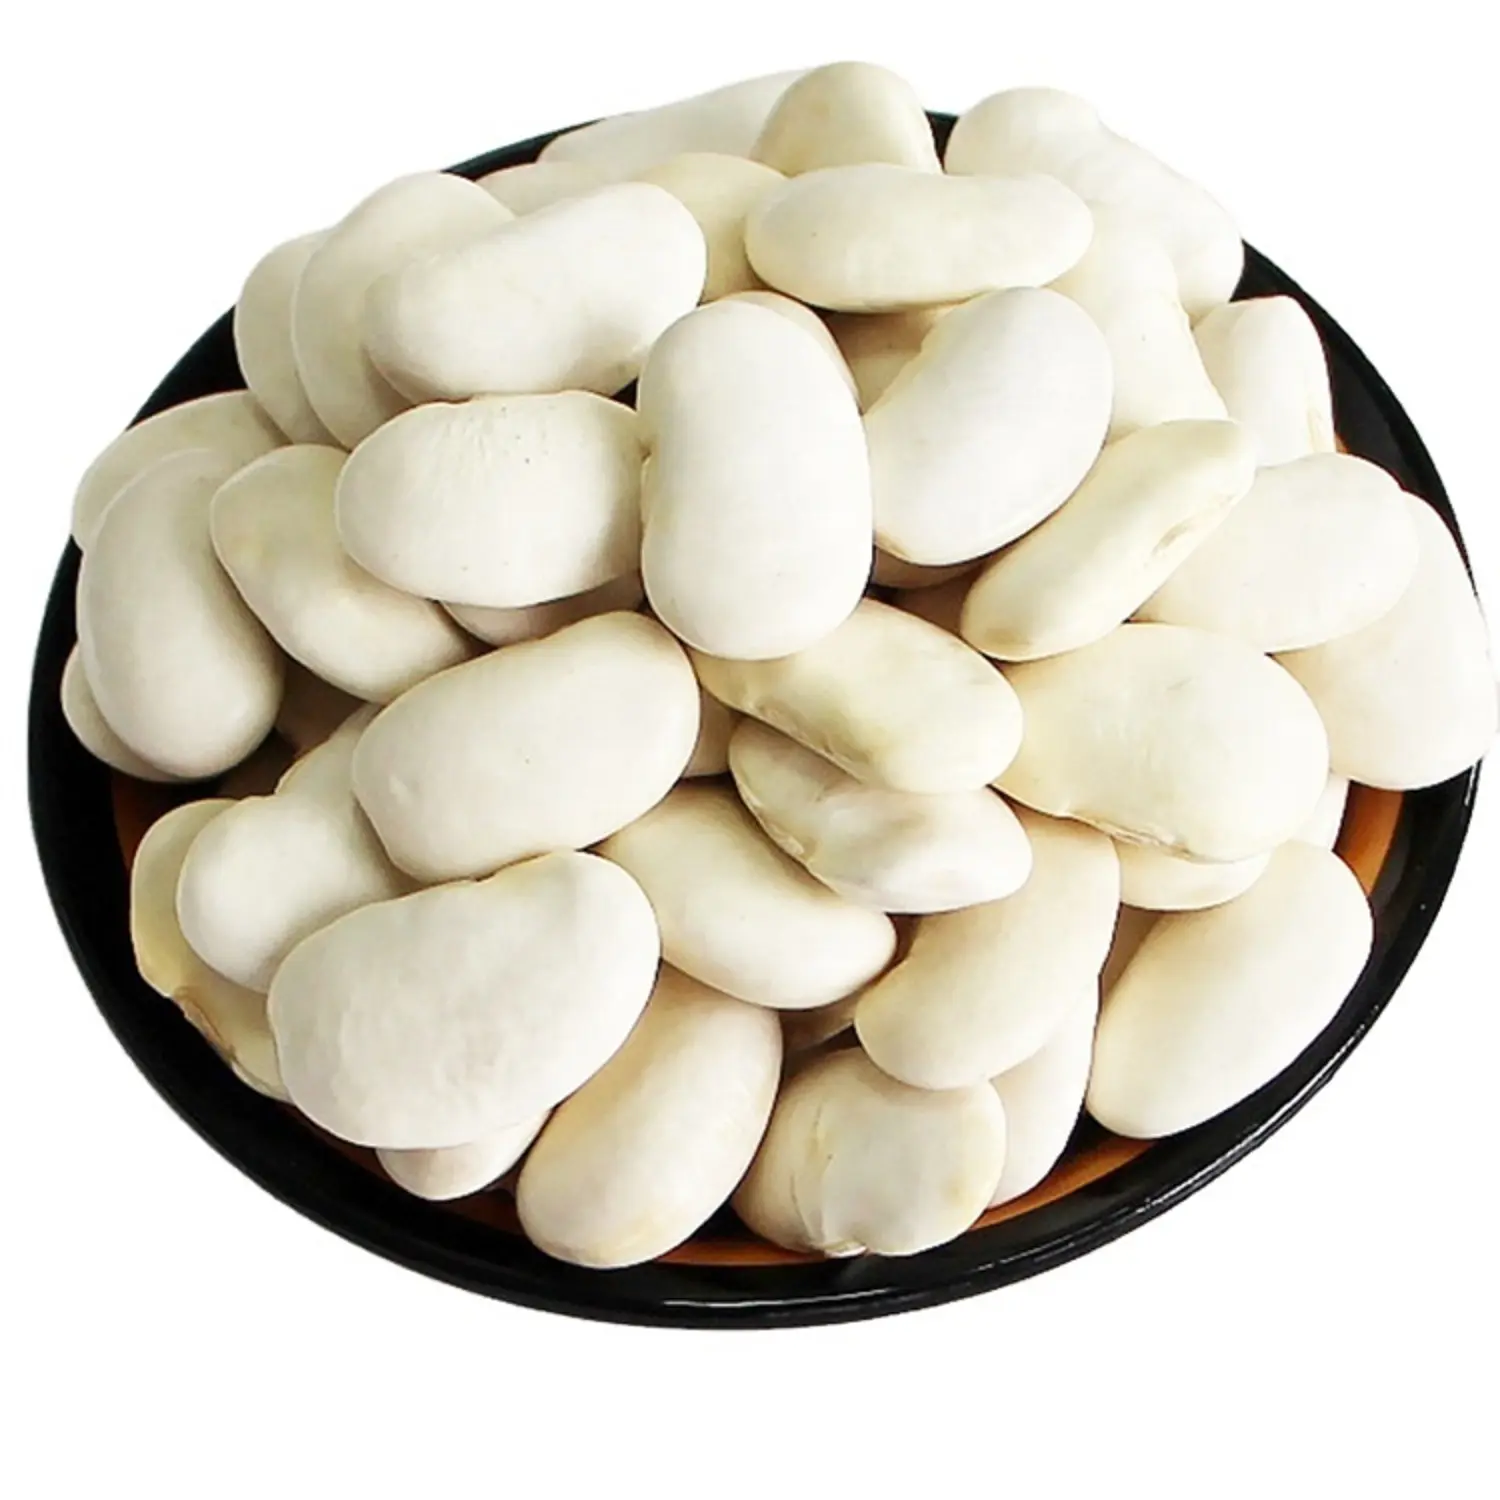 Harga pabrik kacang putih ginjal kacang putih dalam grosir